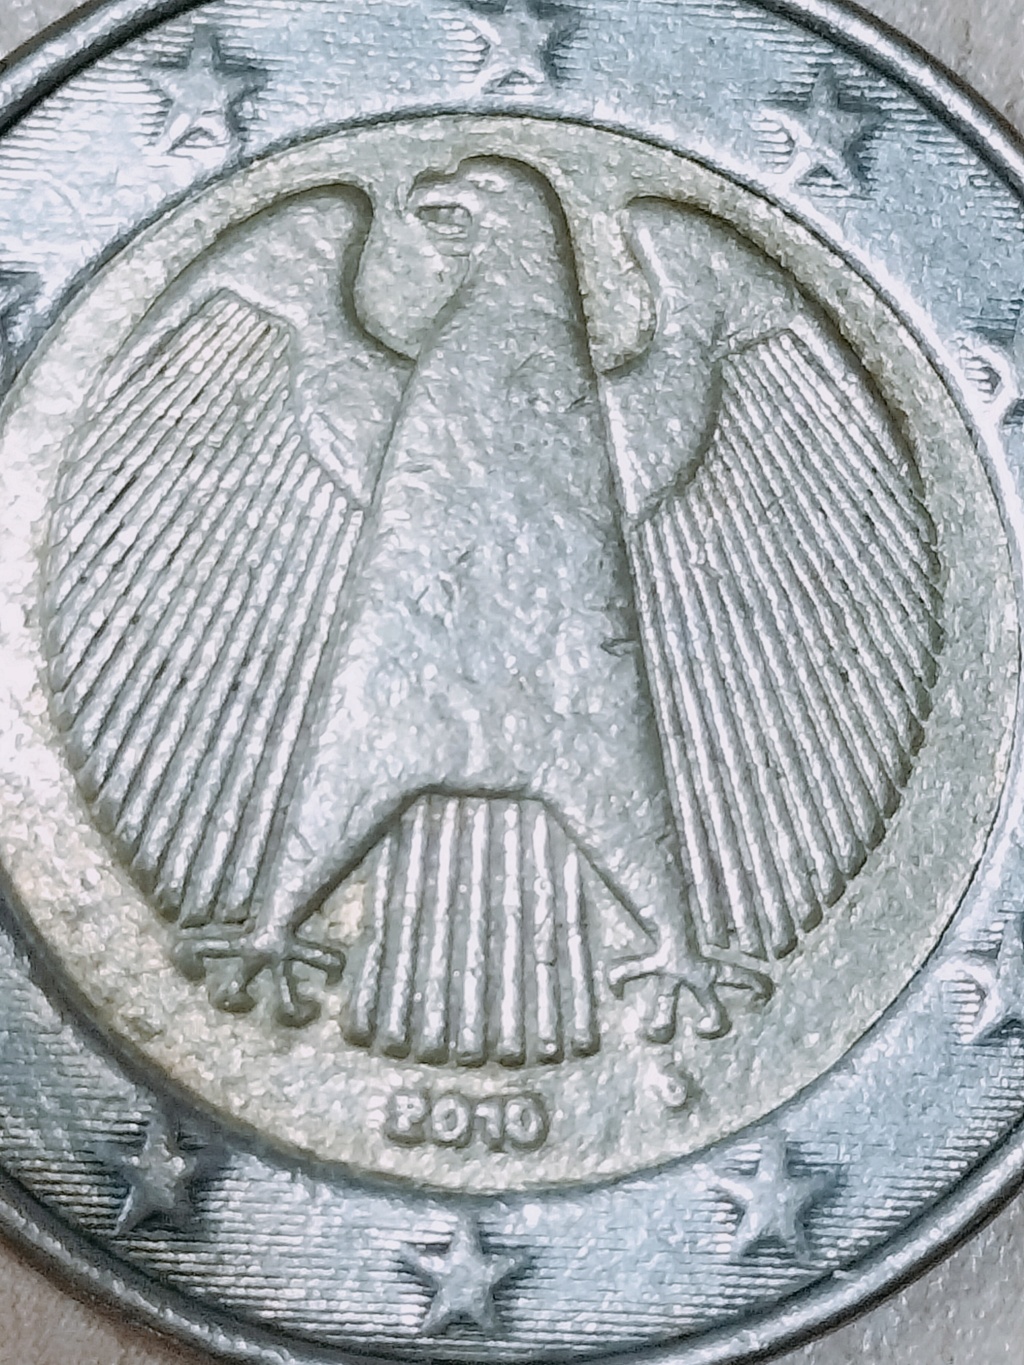 2 euros alemania 2010-D - FALSA ??? Img20293